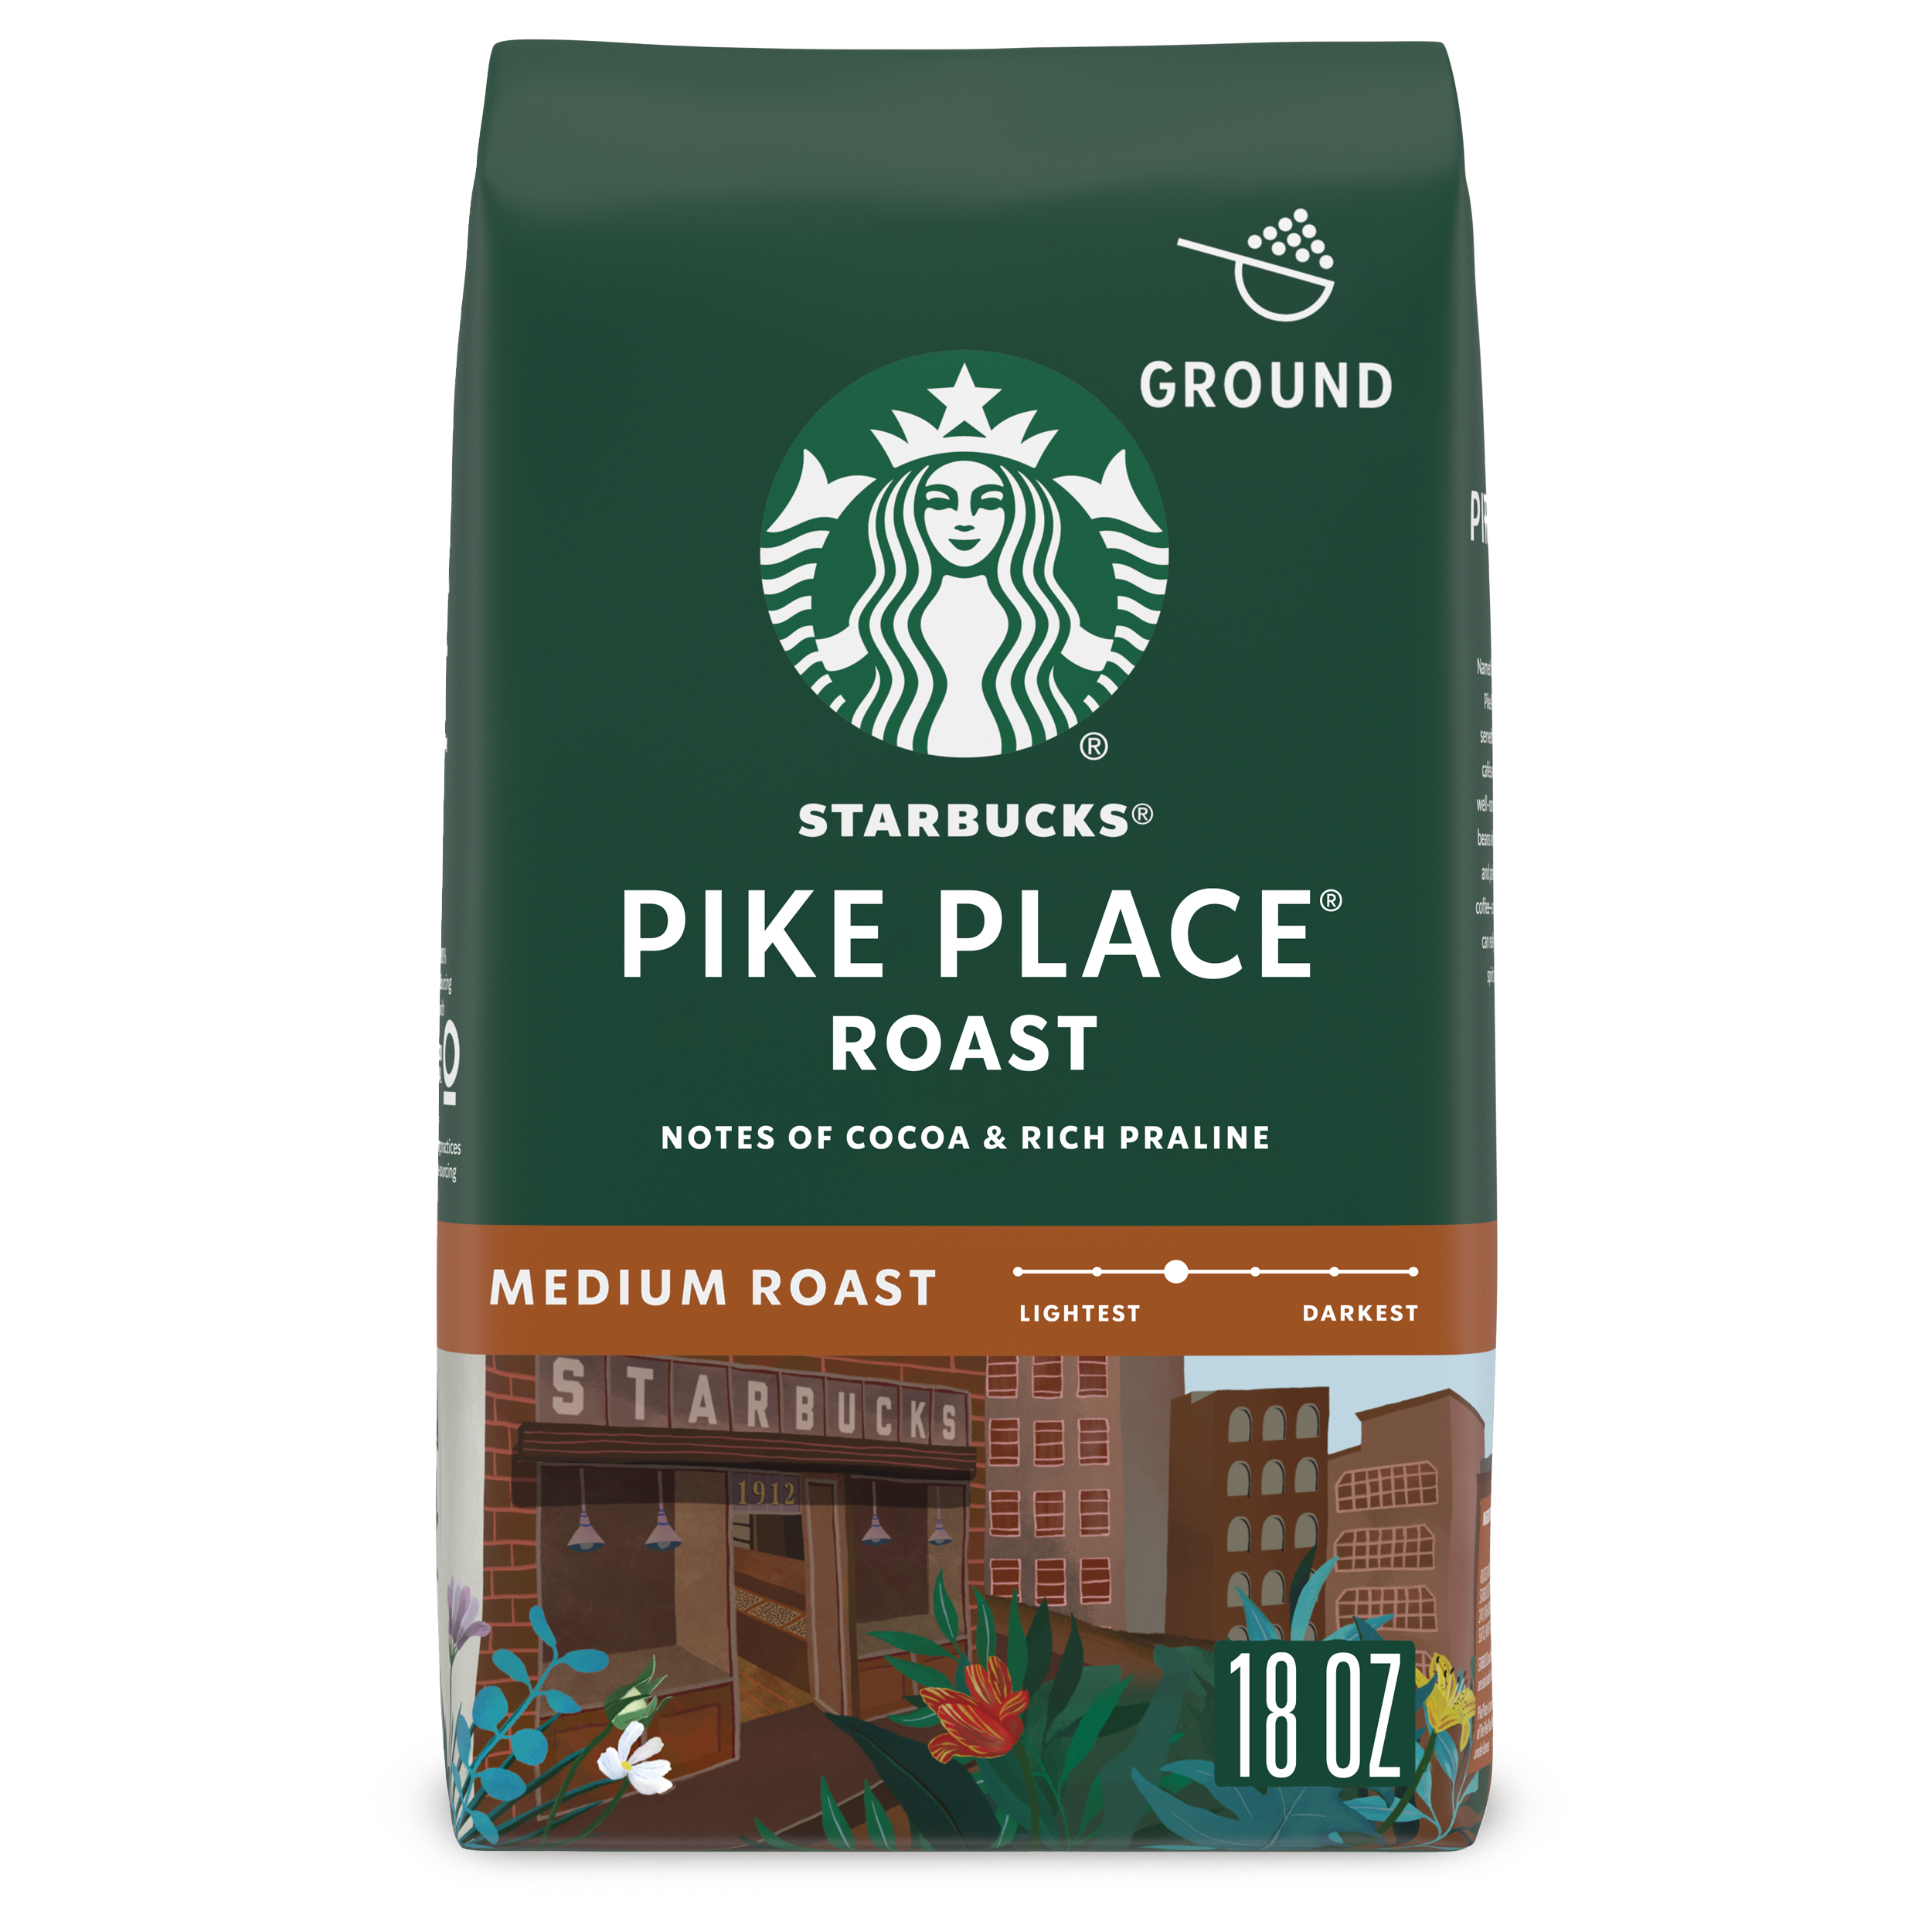 Starbucks Arabica Beans Pike Place Roast, Medium Roast, Ground Coffee, 18 oz - image 1 of 8